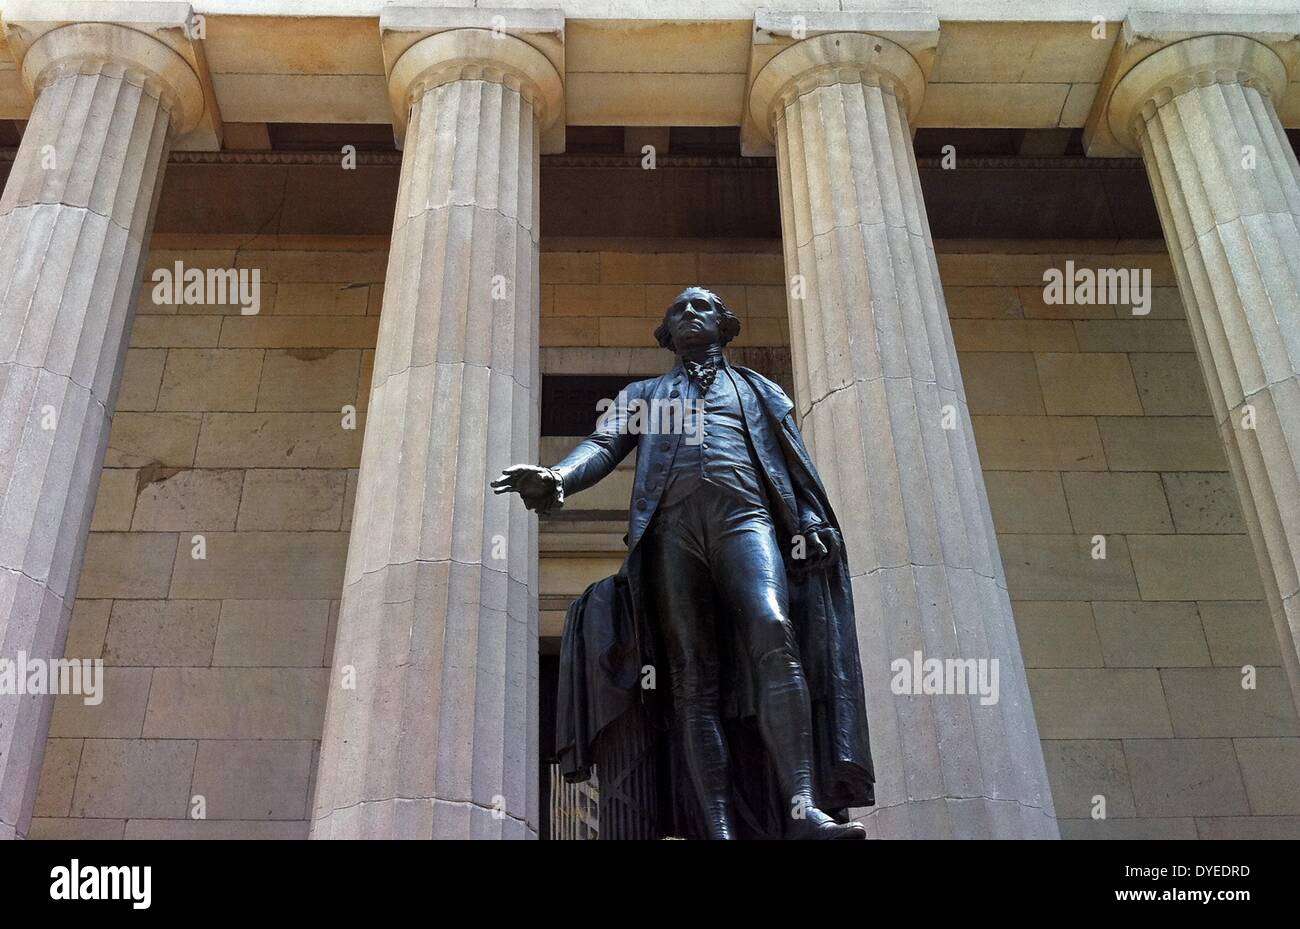 Statue en bronze du président George Washington en 2013. Statue sur le site où le Président Washington a prêté serment comme premier président américain. Banque D'Images